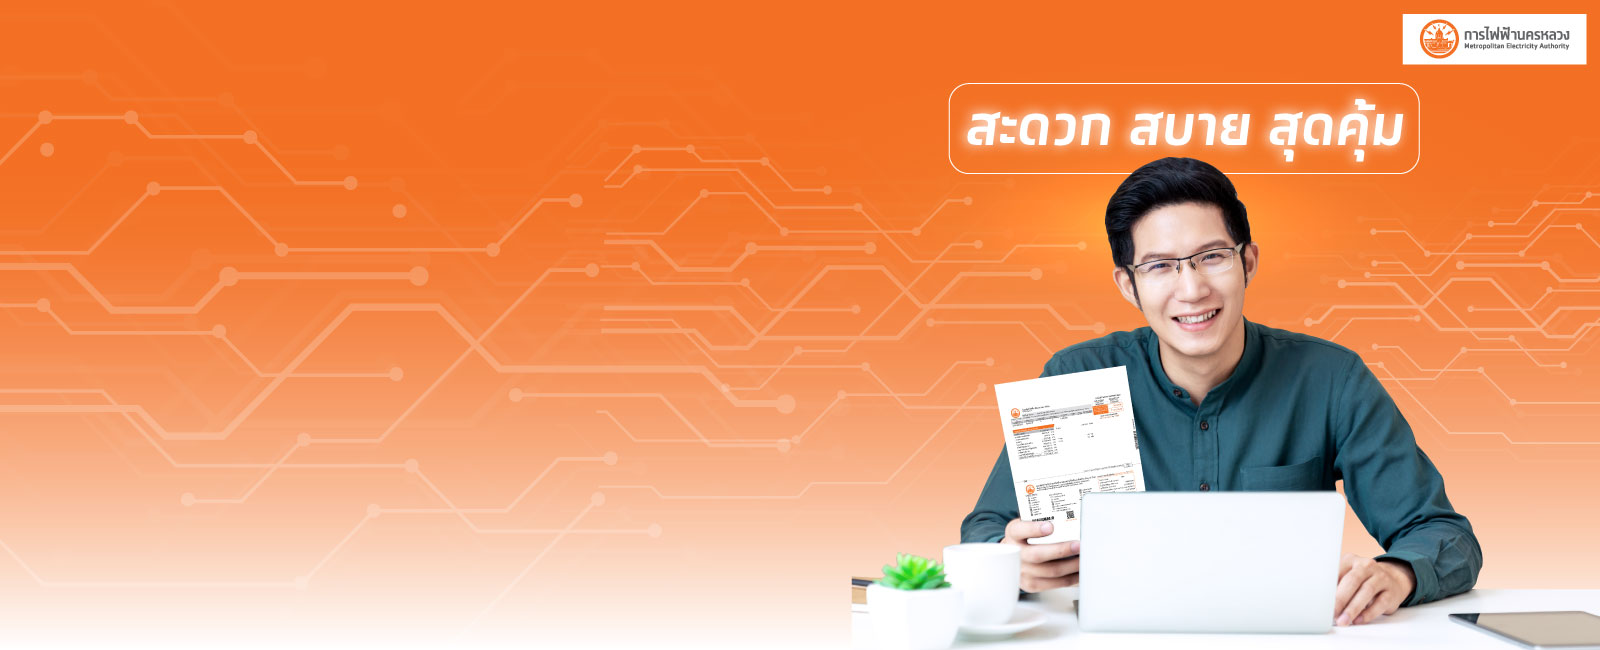 ชำระค่าไฟฟ้าของการไฟฟ้านครหลวง MEA ผ่านระบบ Krungthai Corporate Online